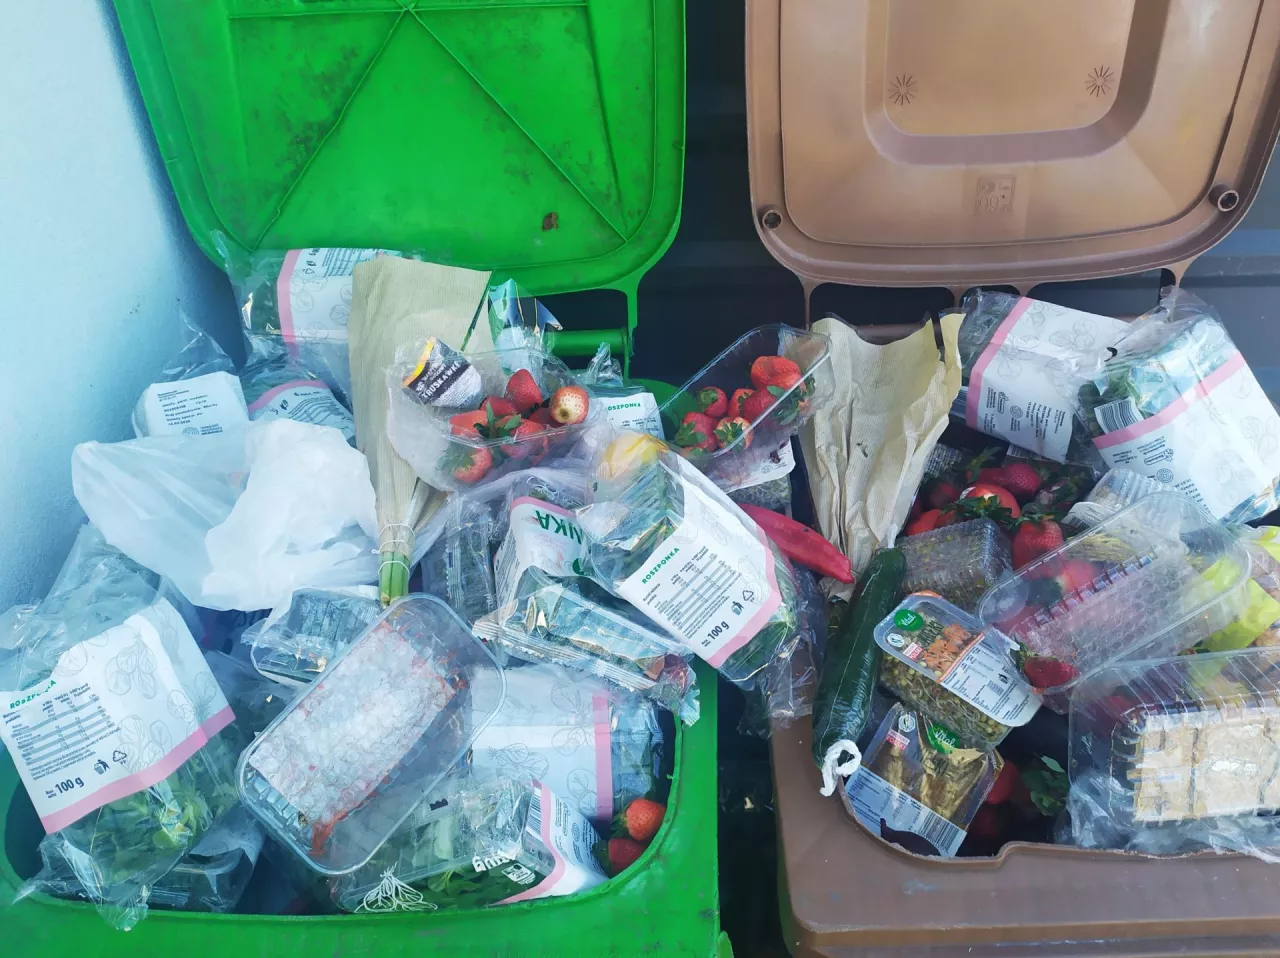 Opakowania plastikowe w kubłach na śmieci, niesprzedana żywność (Shutterstock)